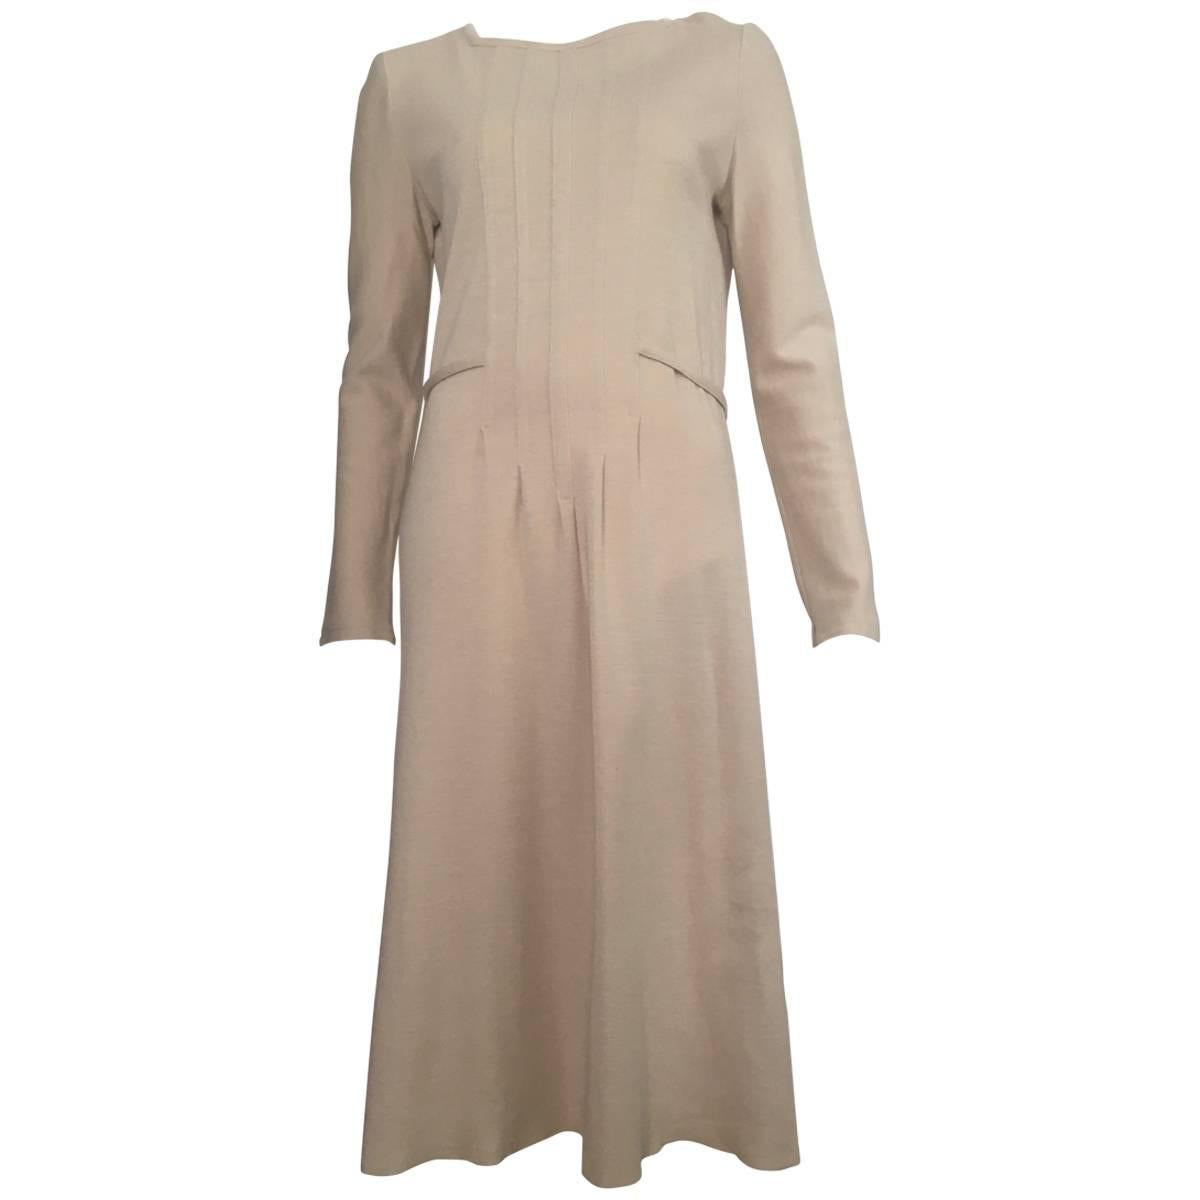 Geoffrey Beene Boutique 1970s Wool Knit Tan Long Sleeve Dress Size 8. For Sale